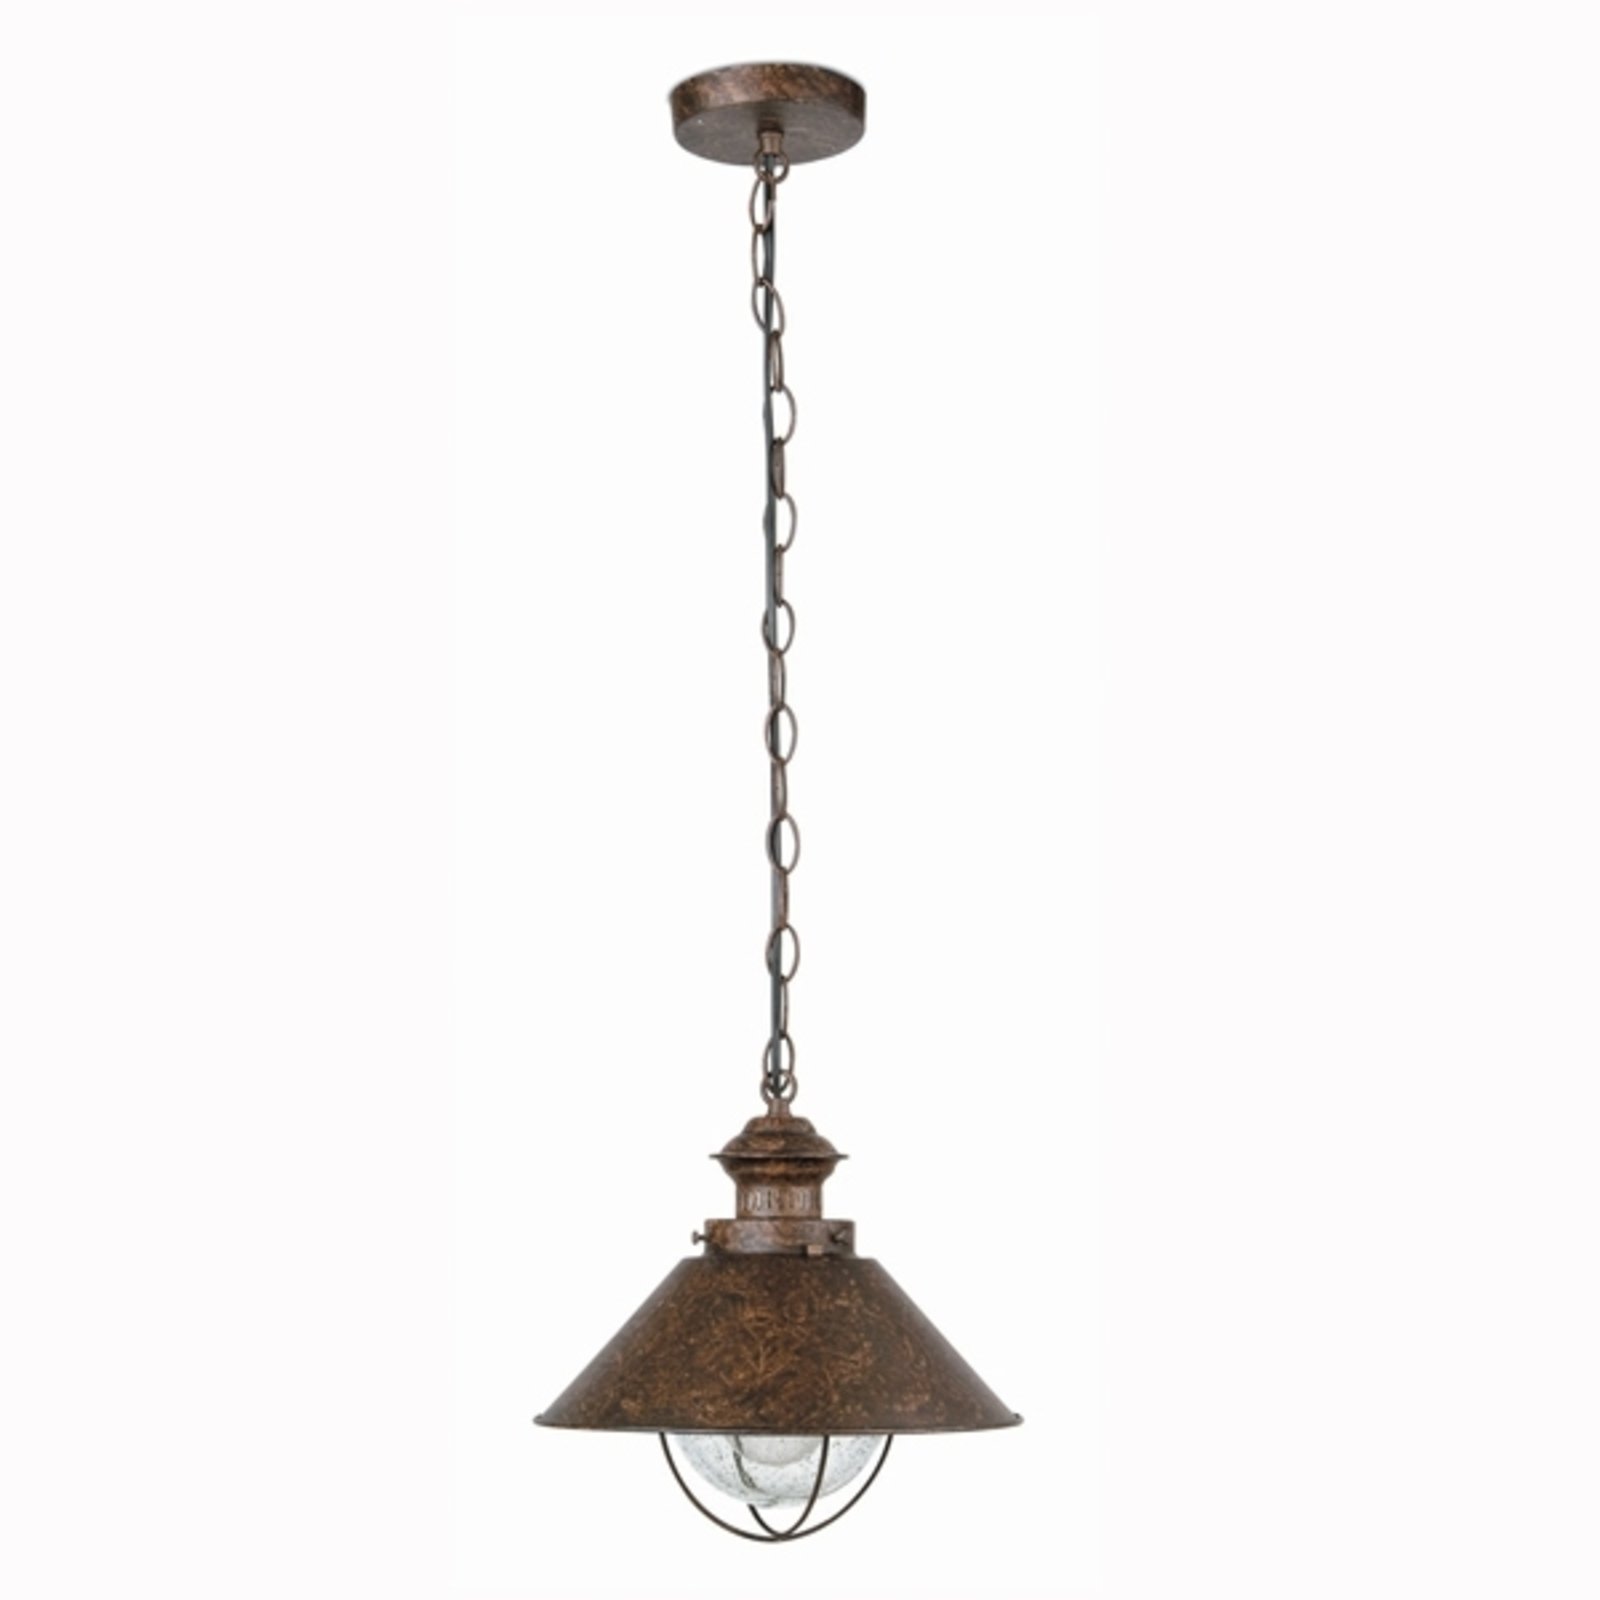 Antique-looking Nautica Pendant Lamp, 34.5 cm